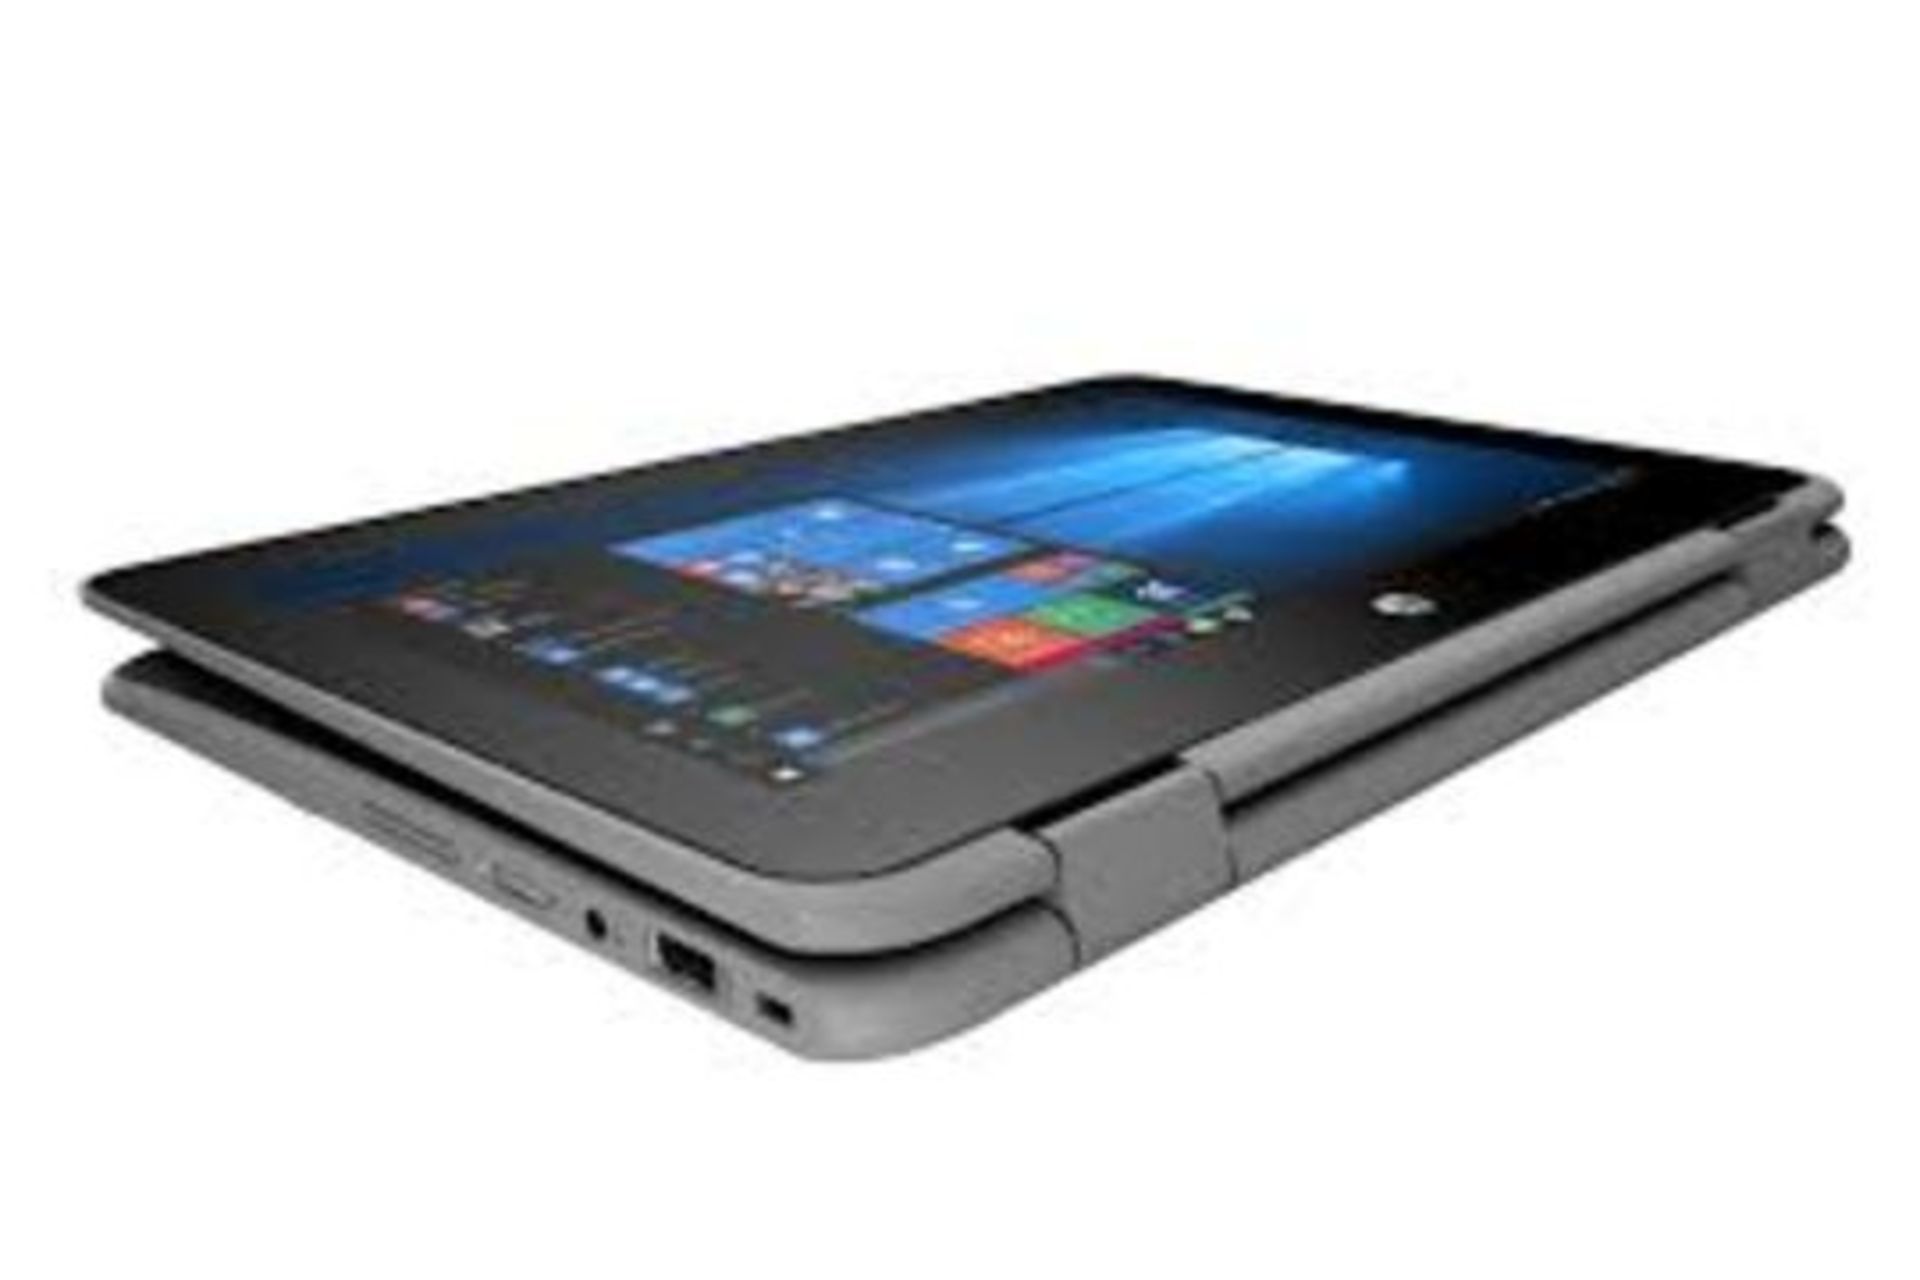 HP ProBook x360 11 G1 EE 2 IN 1 Laptop (Pentium Quad Core/4 GB/128 GB SSD) RRP £450. - Image 2 of 4